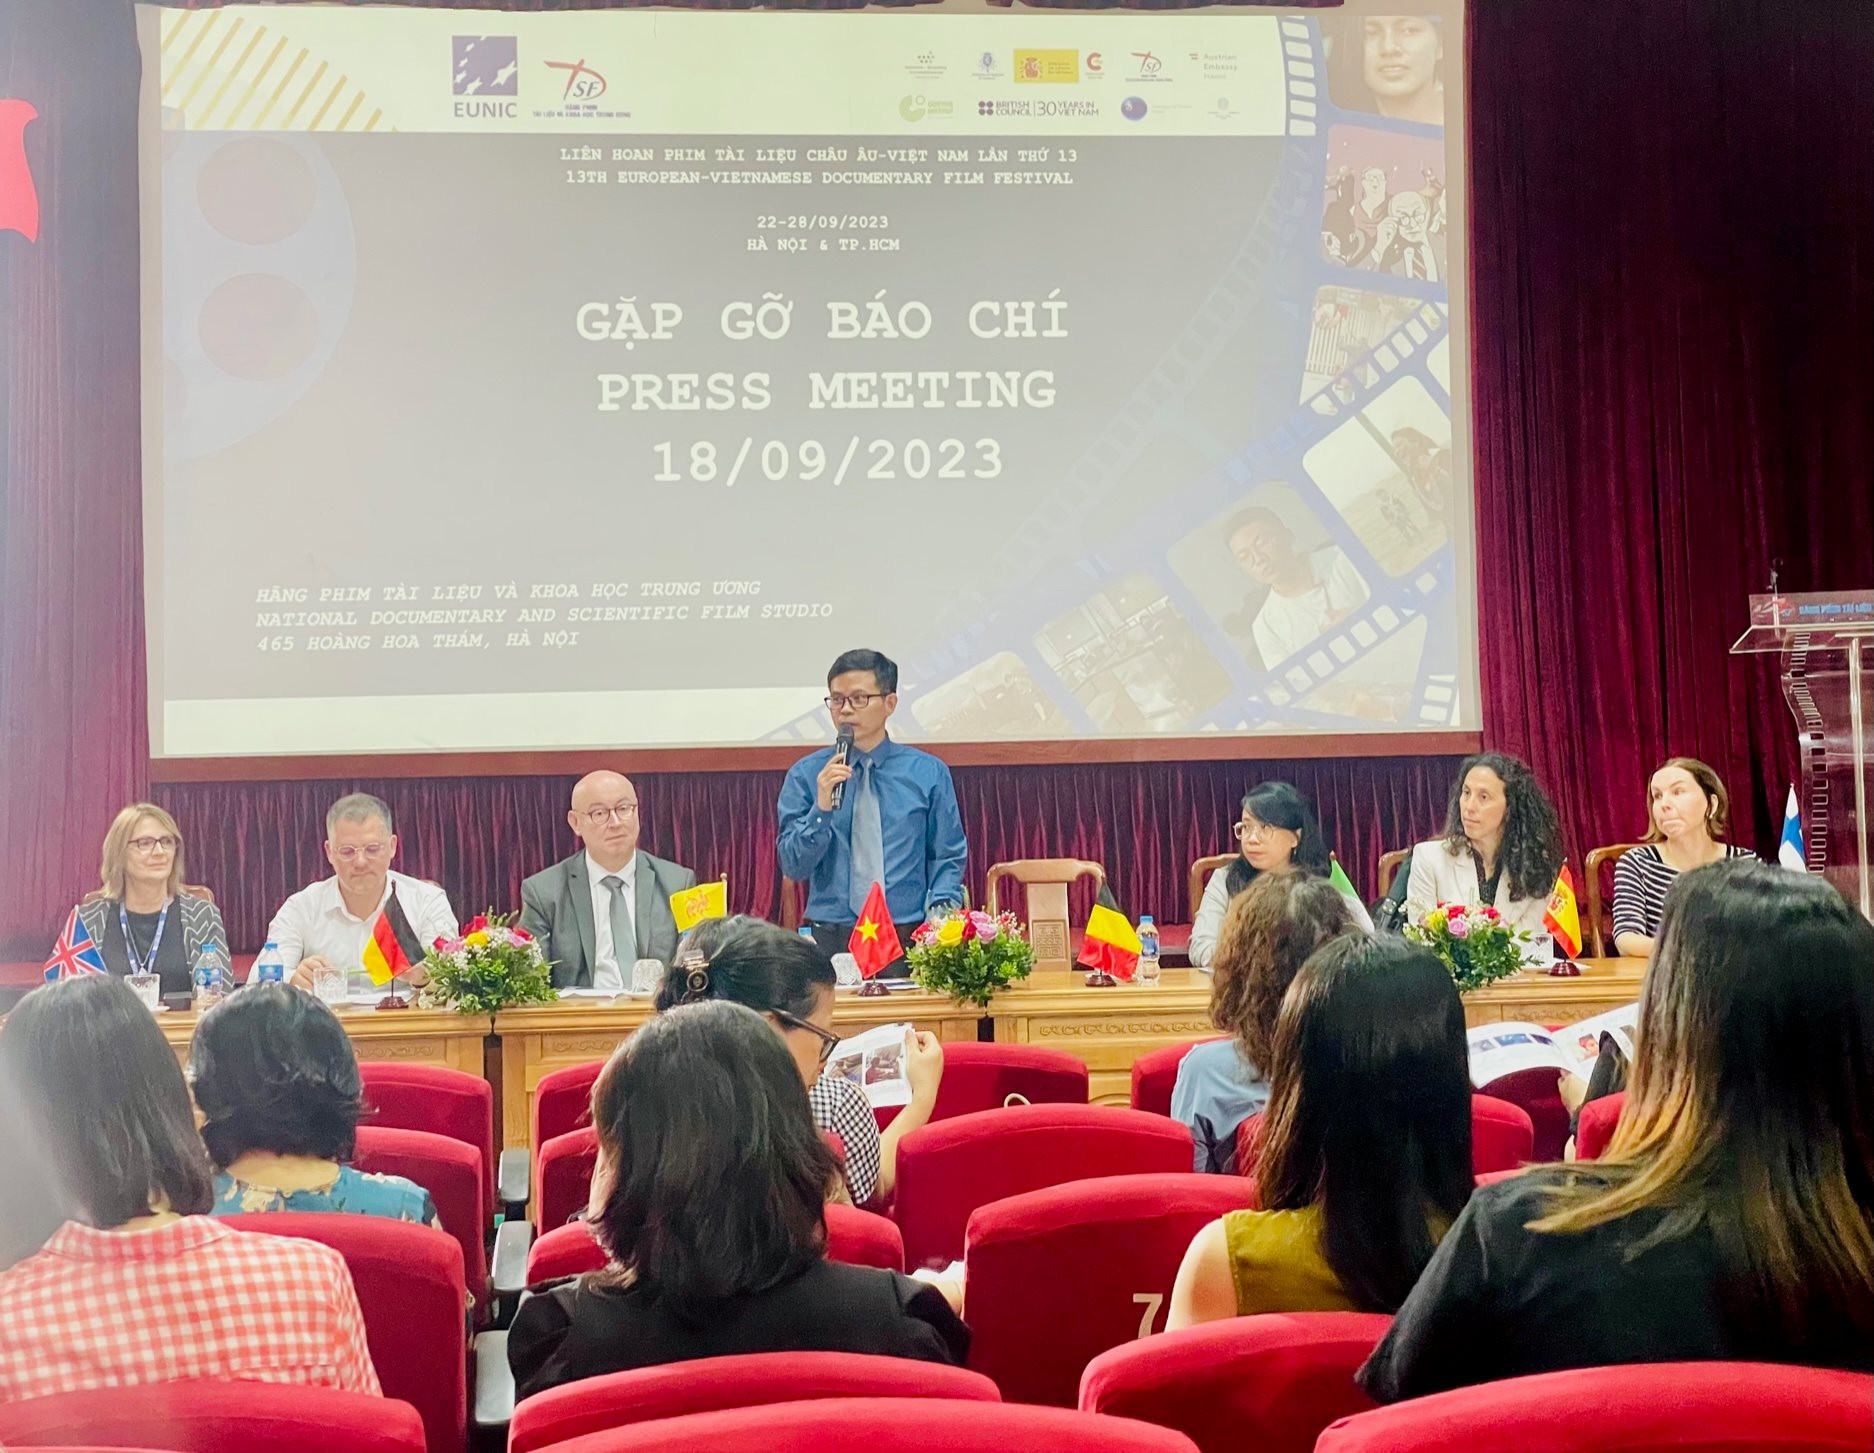 Liên hoan Phim Tài liệu châu Âu - Việt Nam lần thứ 13 diễn ra từ ngày 22 đến 28/9/2023